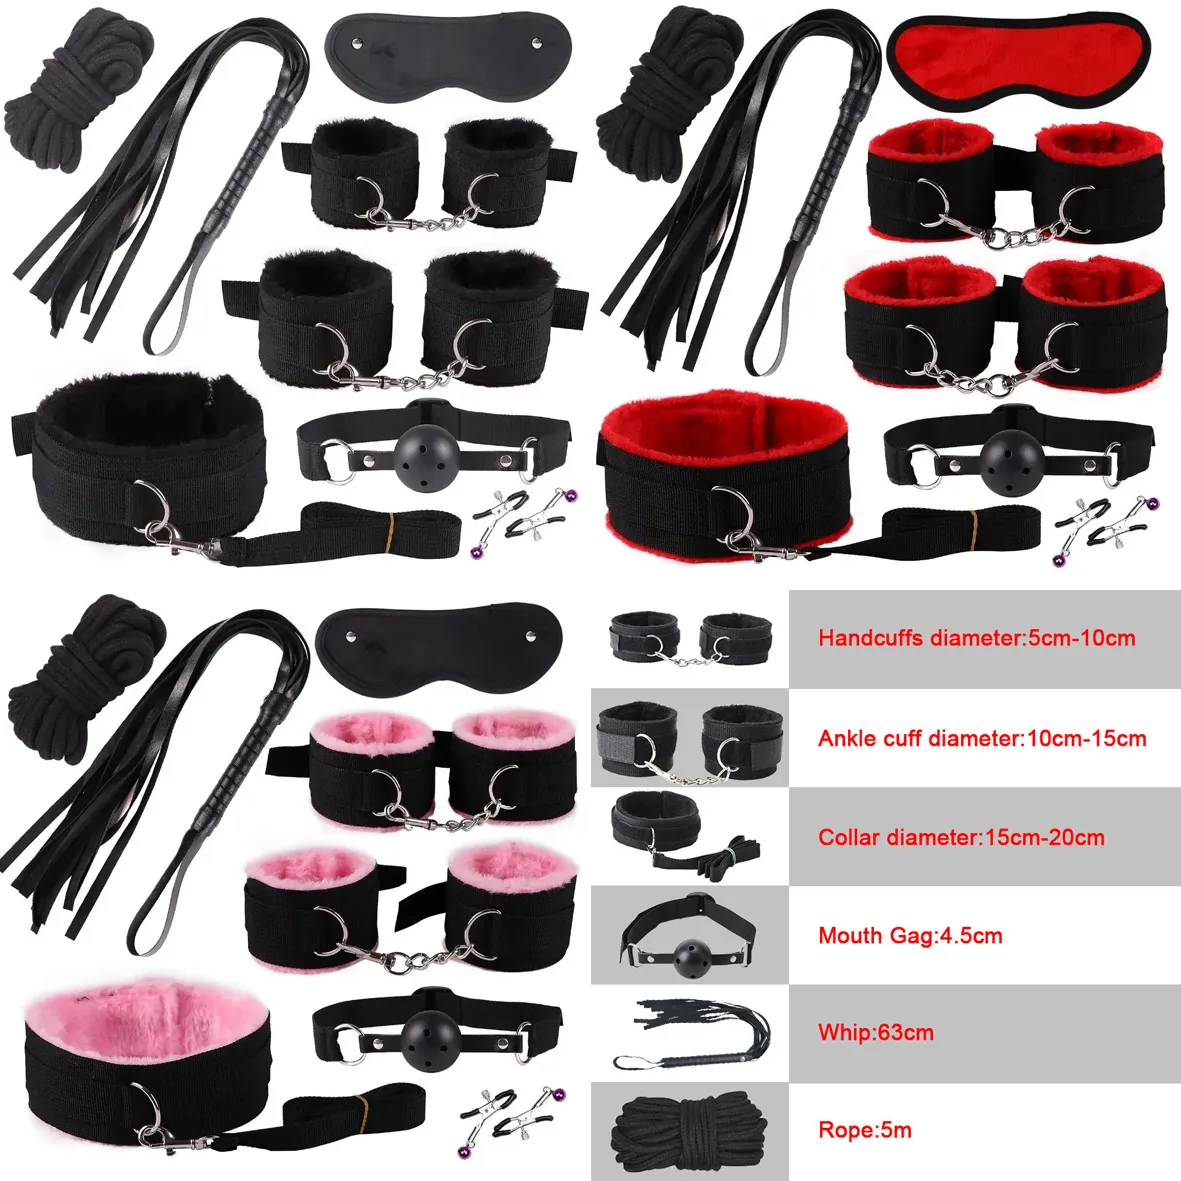 الأسود الوردي 8pcs BDSM مجموعات مثير منتجات المثيرة لعبة البالغين العبودية مجموعة الأصفاد المشابك اللاعب Gag Whip Rope Toys للأزواج